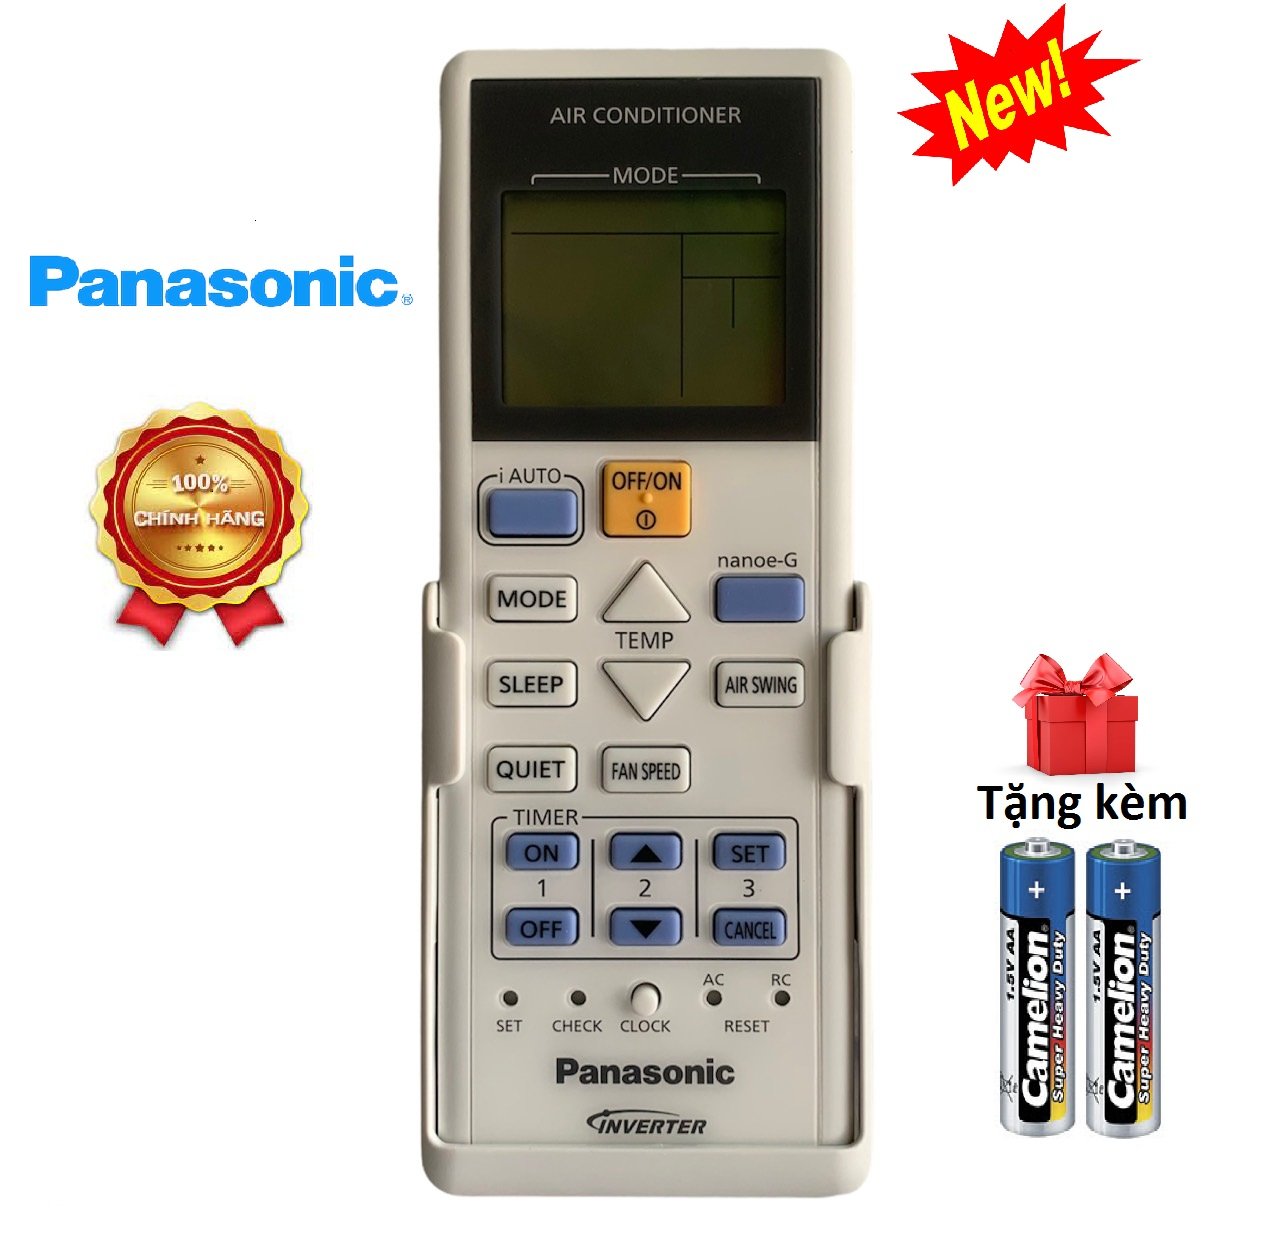 Điều khiển điều hòa Panasonic inverter CHÍNH HÃNG - Full box [ tặng kèm pin ] remote máy lạnh panasonic 1 chiều rimot điều hoà pana mót máy lạnh panasonic 2 chiều